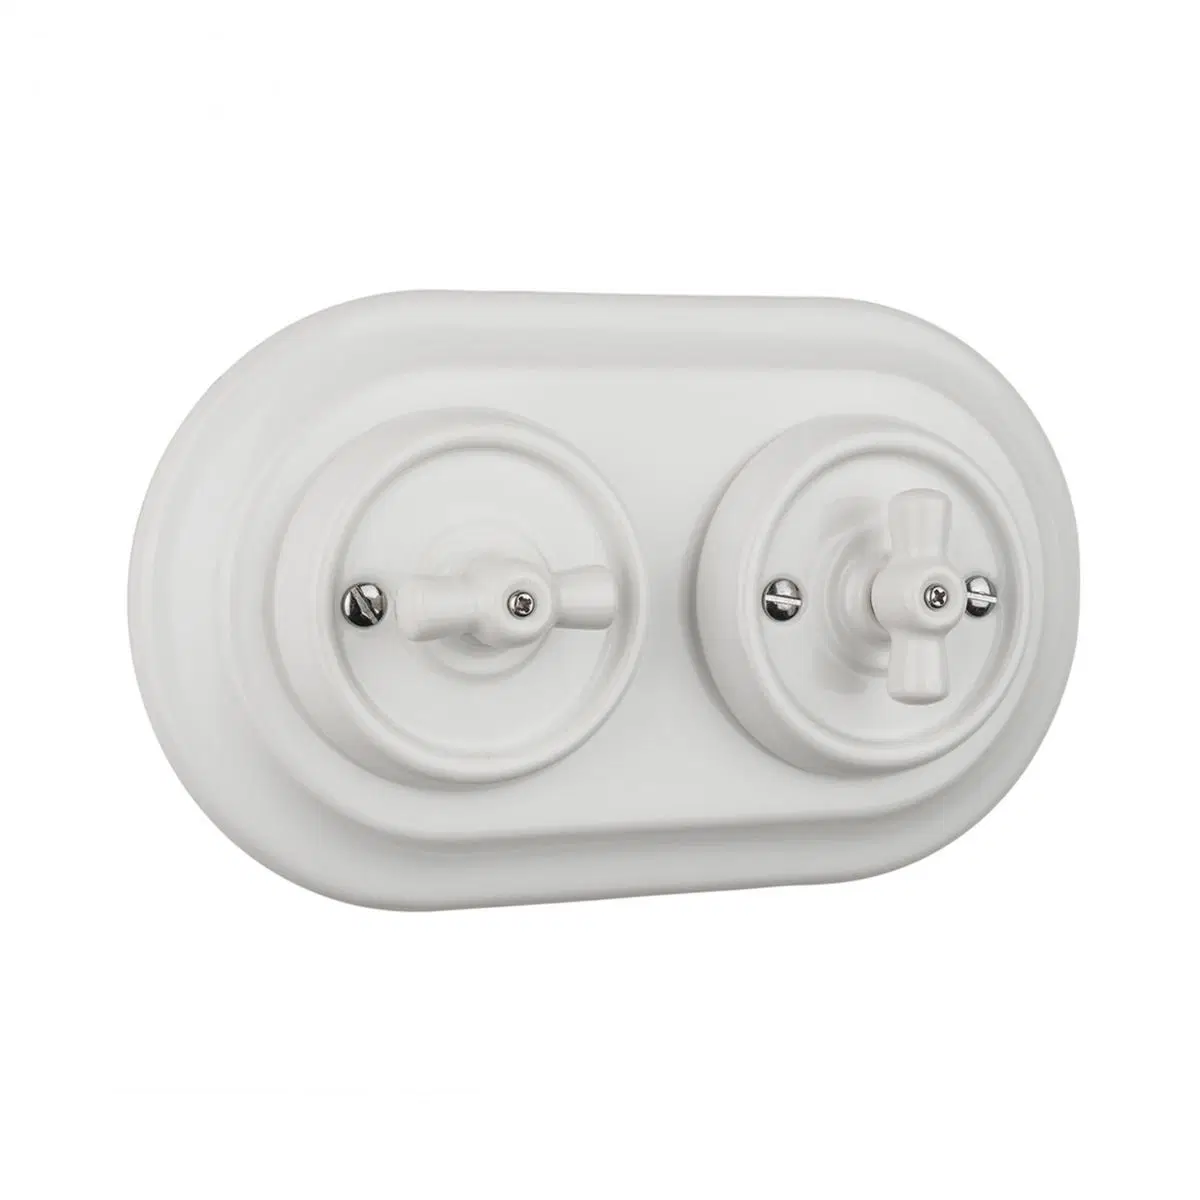 Porcelana branca do interruptor rotativo Ceramic Interruptor de parede com 2 orifícios da estrutura de porcelana